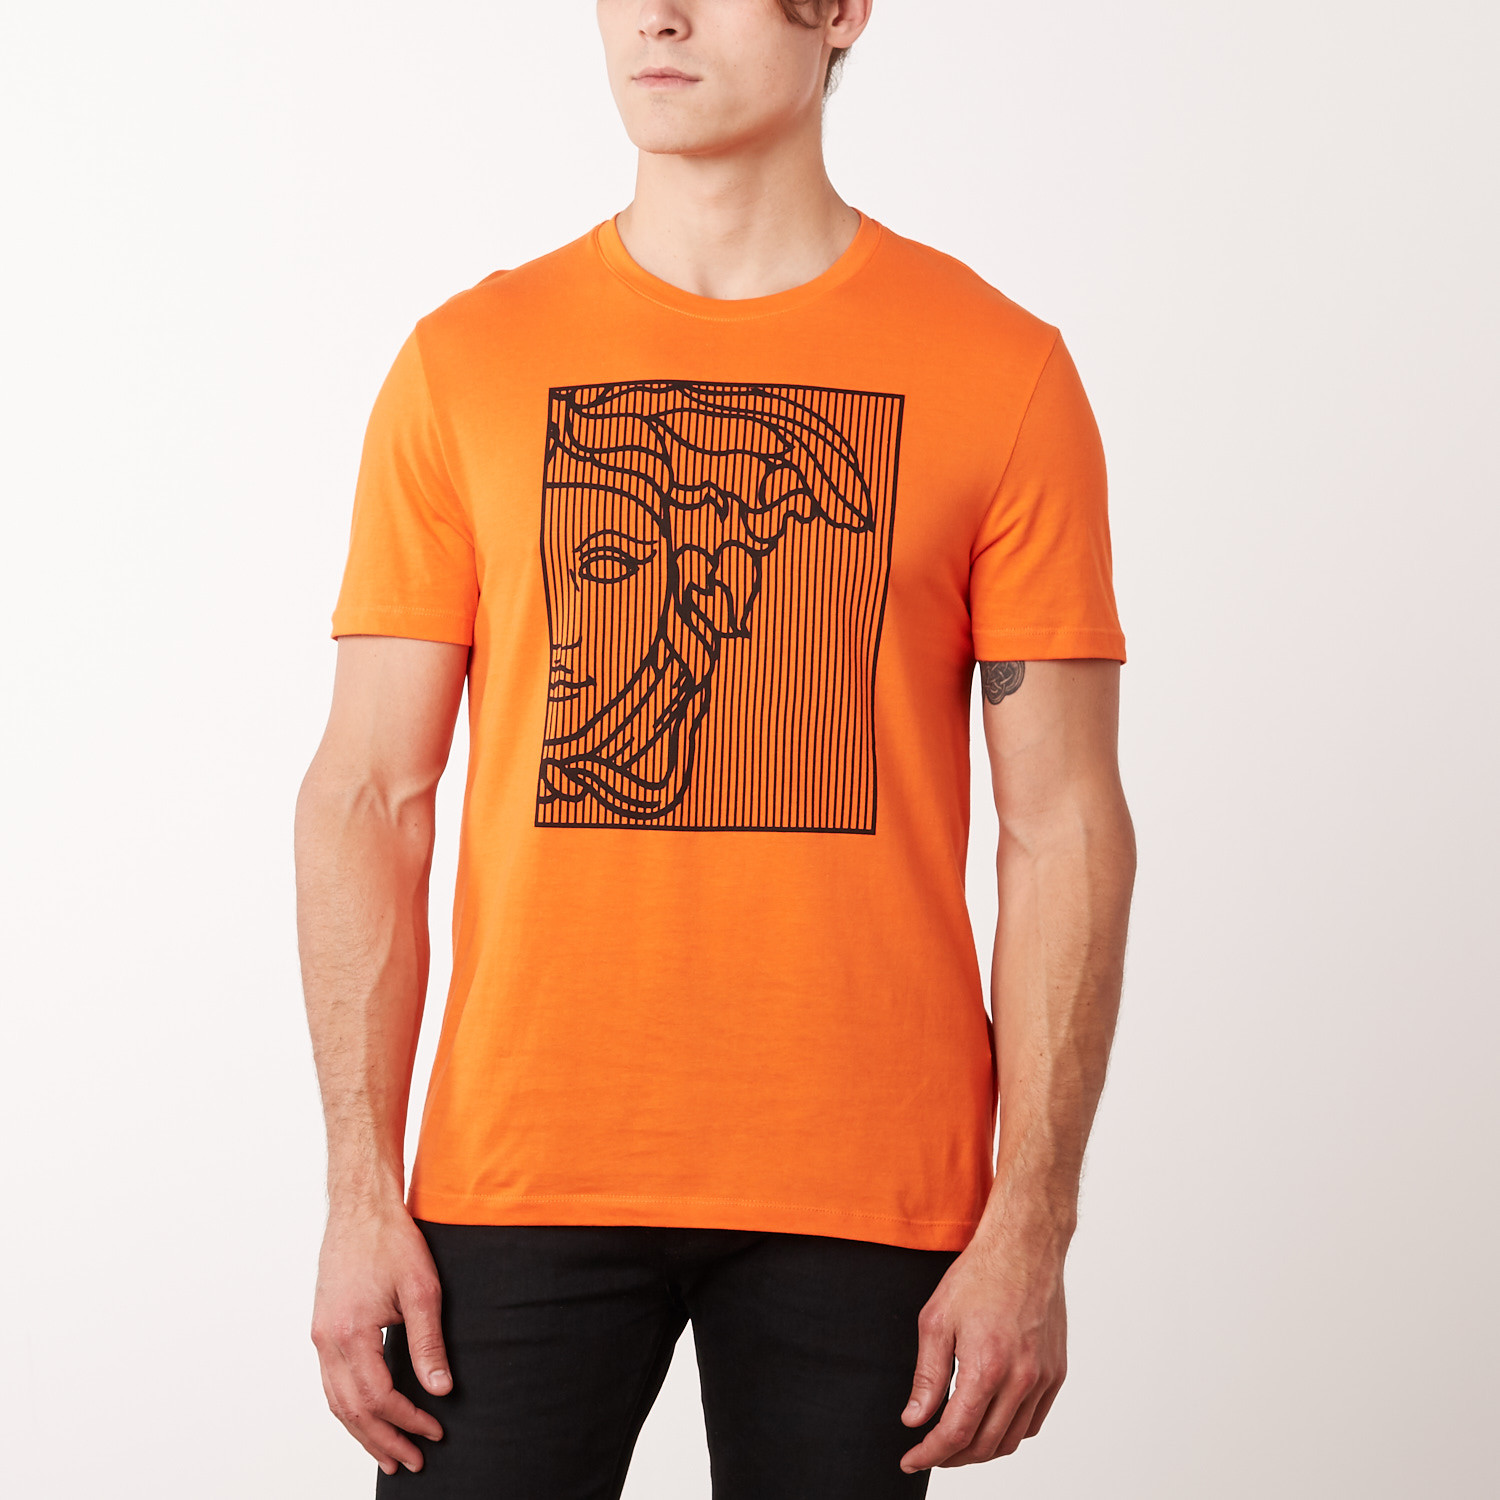 versace t shirt orange